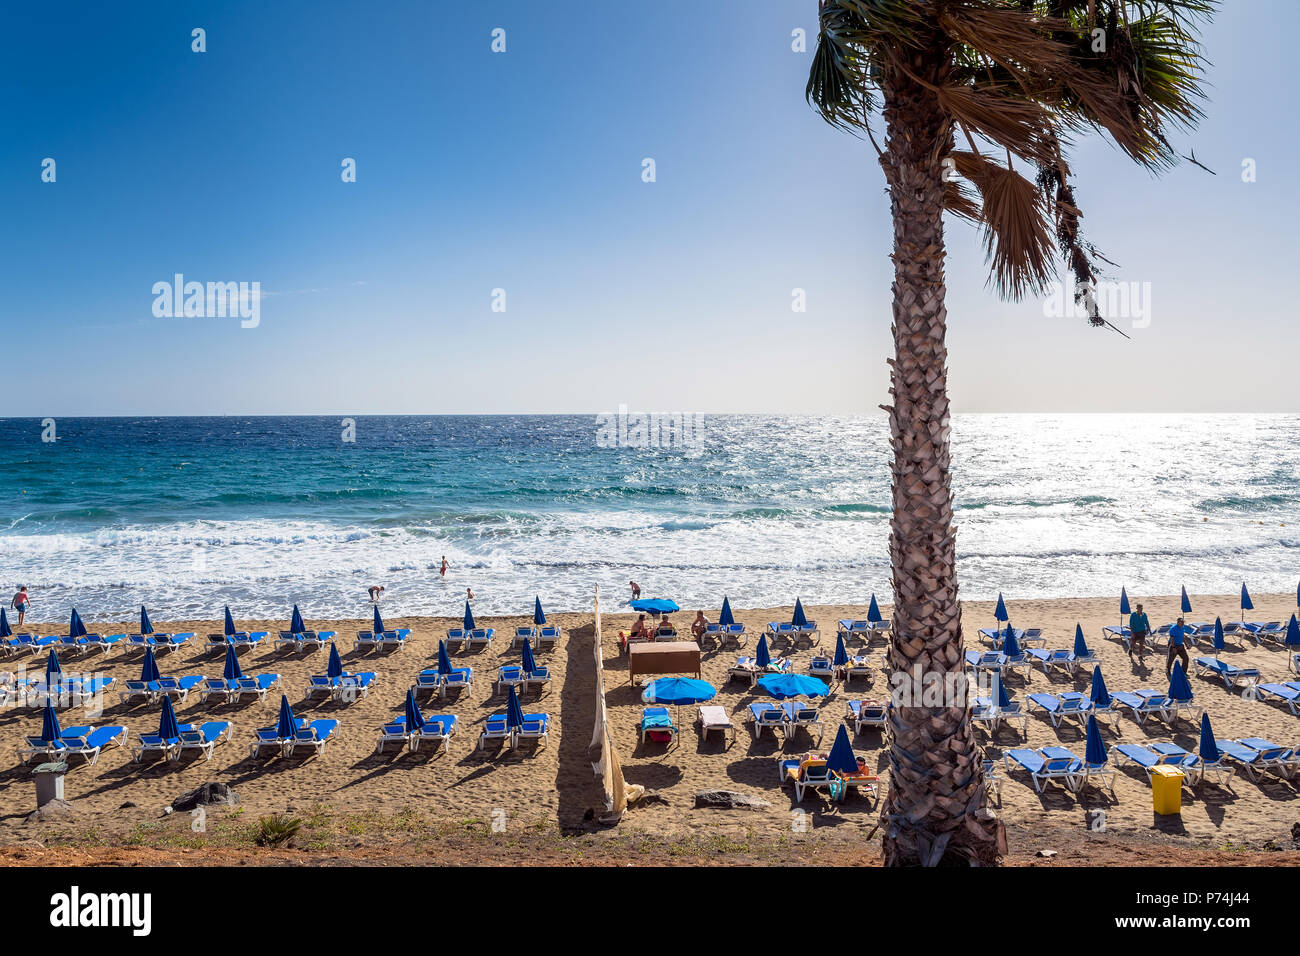 Puerto del Carmen, Espagne - Décembre 29, 2016 : la vue Jour de plage avec des palmiers et les touristes à Puerto del Carmen, Espagne. Puerto del Carmen est le principal tour Banque D'Images